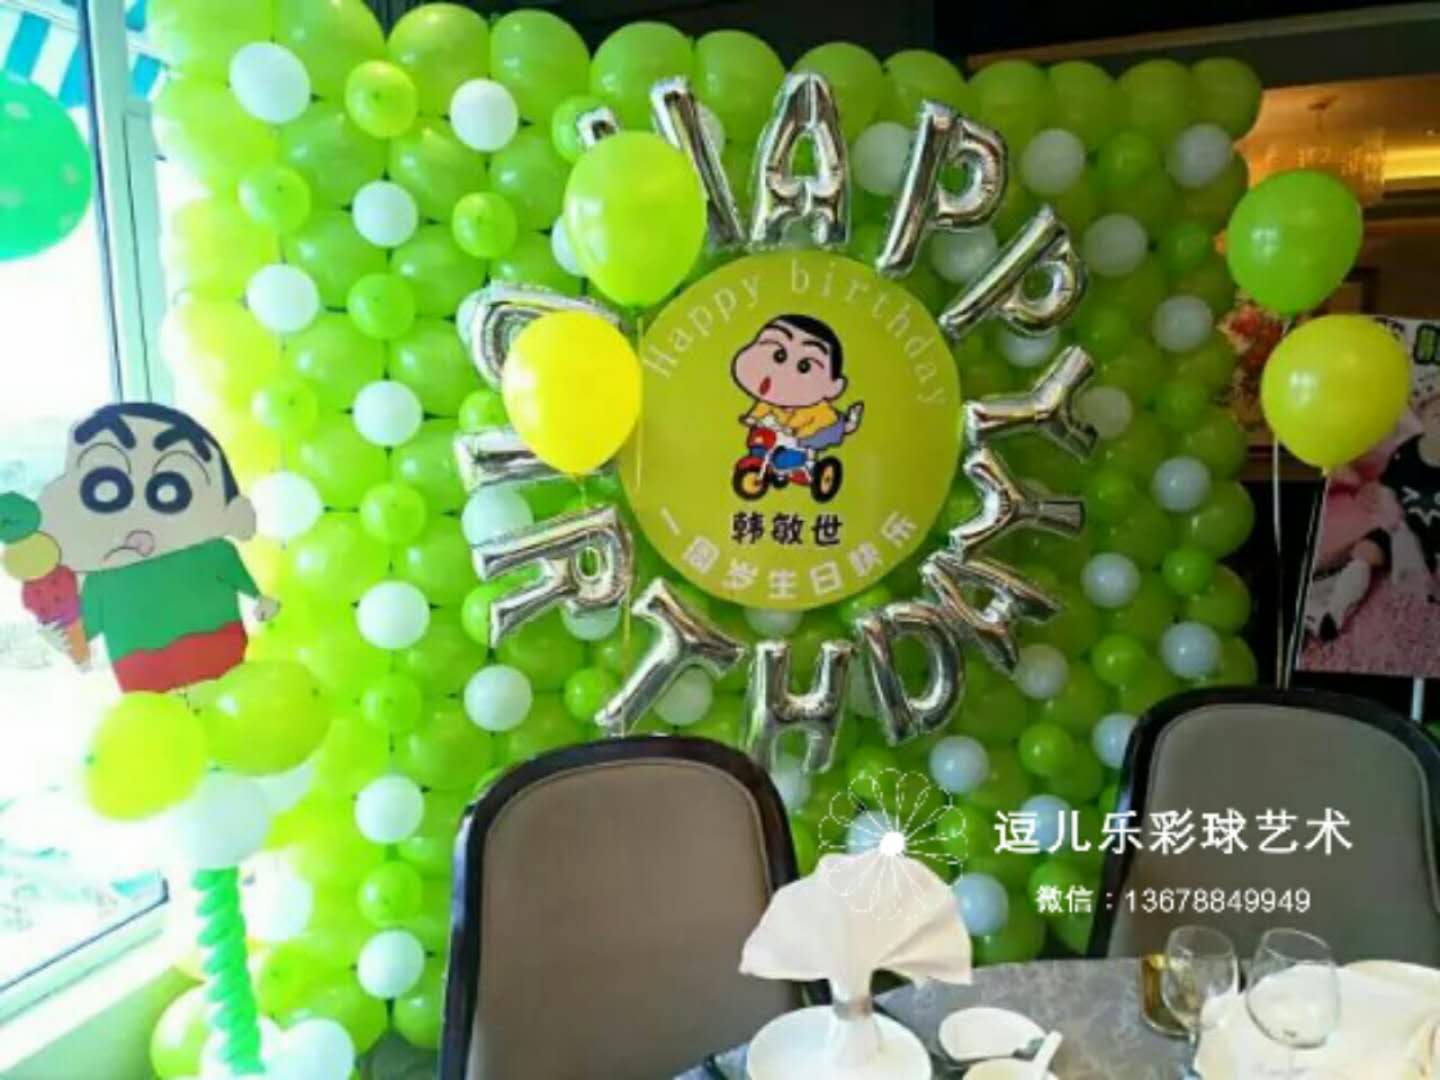 青岛气球装饰气球布置气球造型设计公司推荐逗儿乐气球